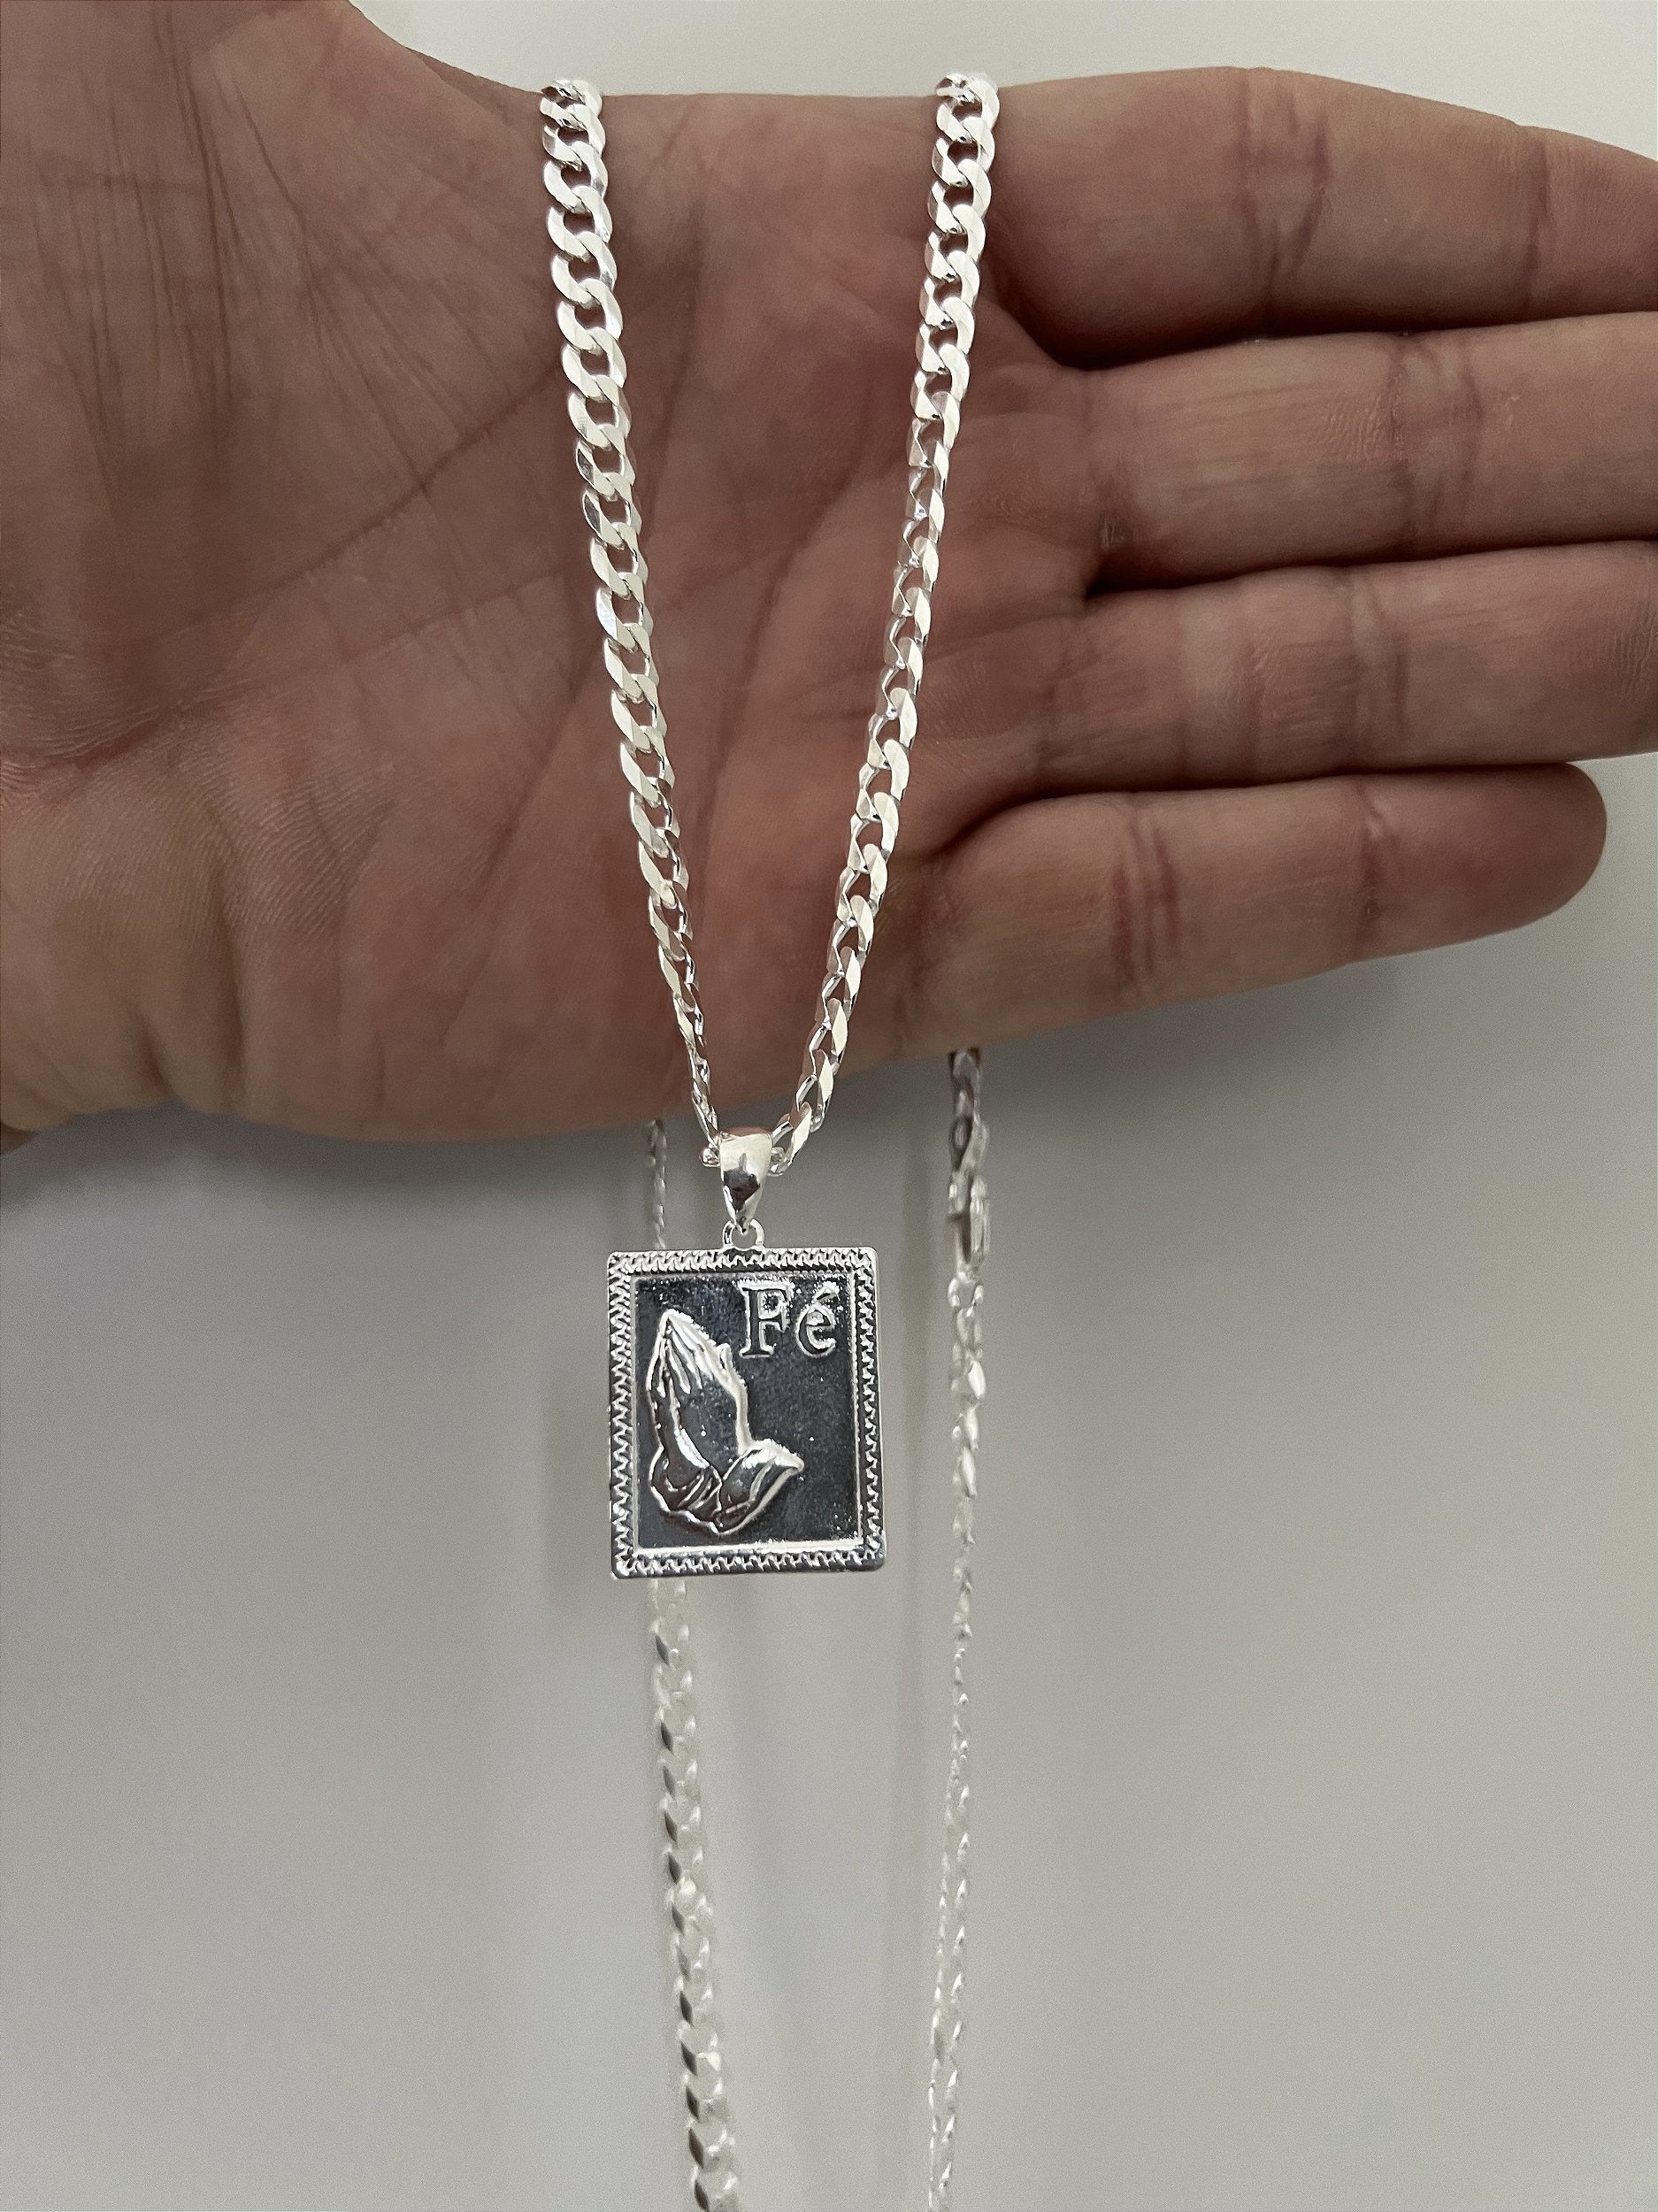 Cordão Masculino Grossa De Prata 925 Escama 70cm 5,5mm Grumet - TorkJoias-  acessórios em prata 925 com garantia